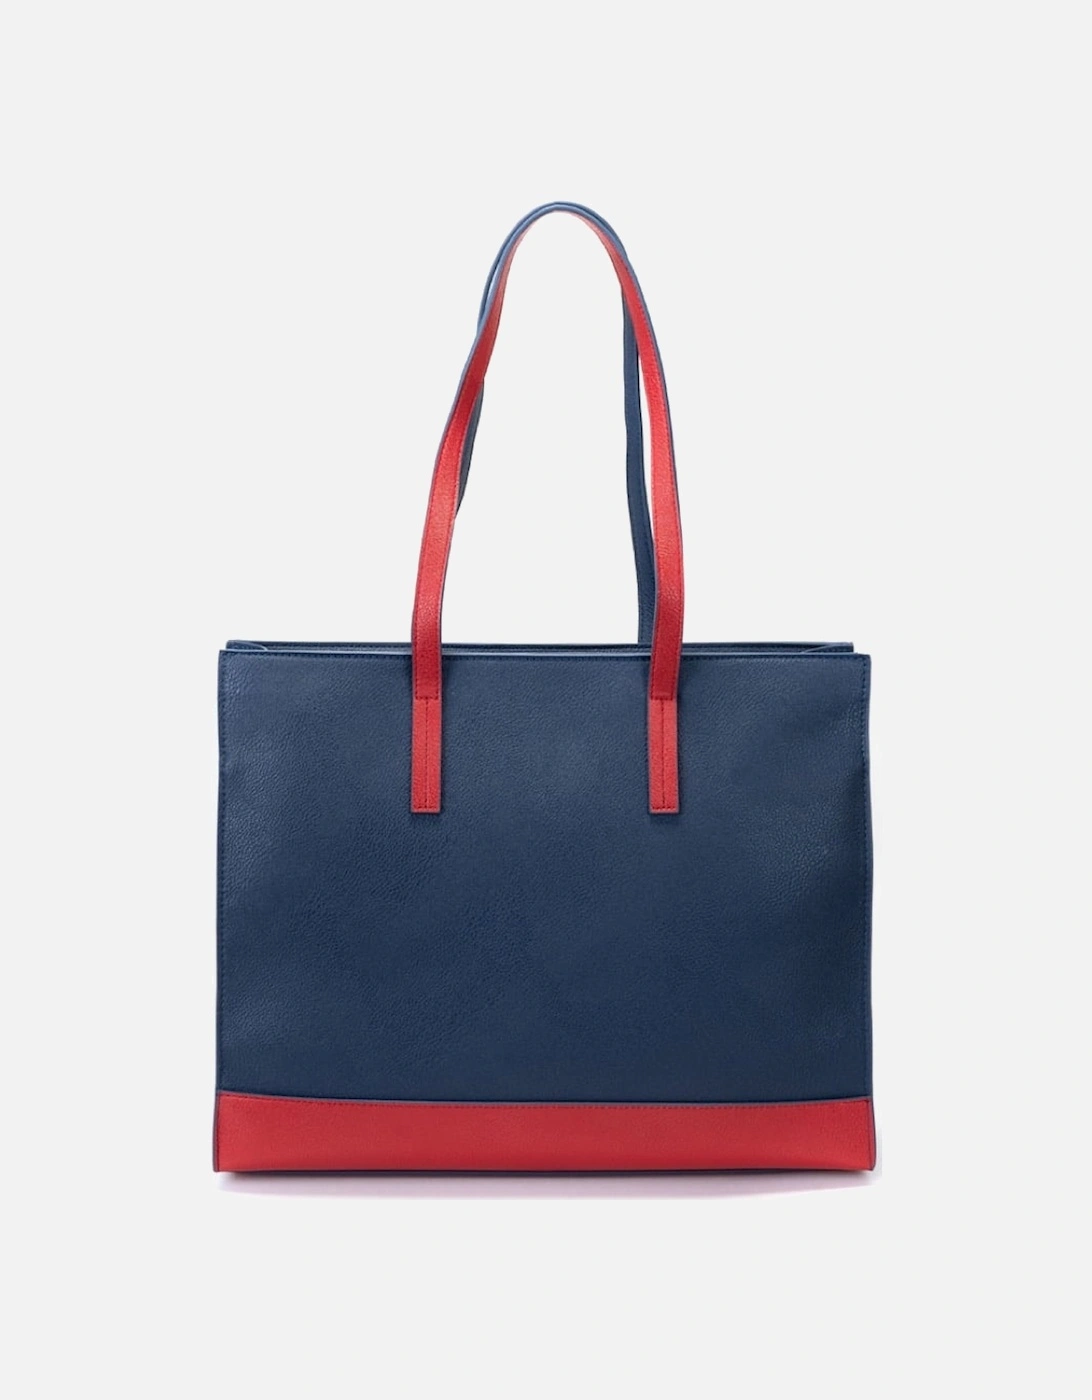 Jil Shopping Bag - Ocean Blue